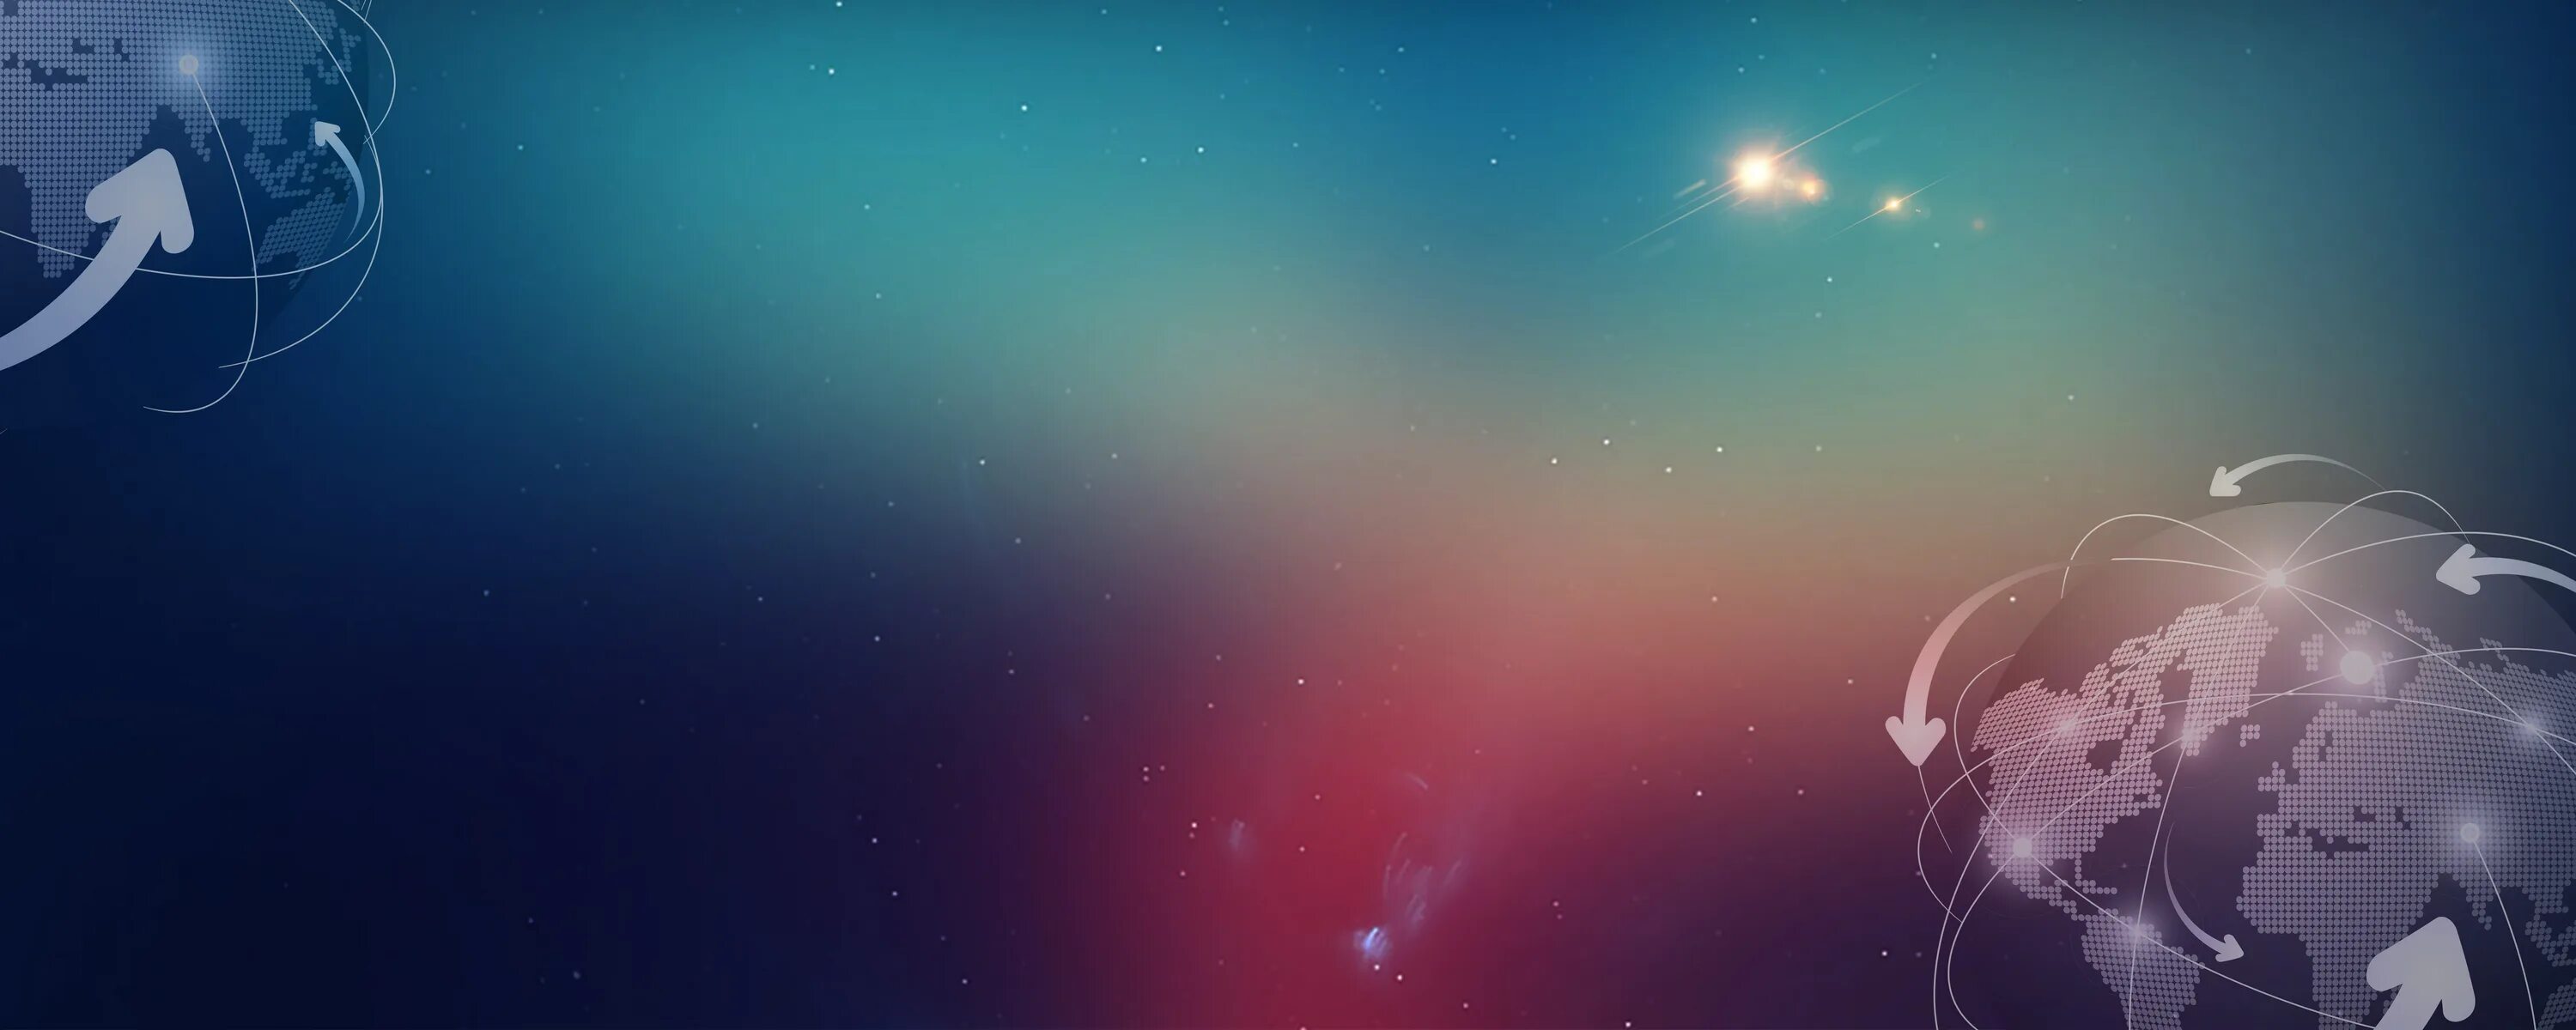 В качестве фона используют. Космос. Нейтральный фон. Красивый баннер. Фоновое изображение для приложения Озон.